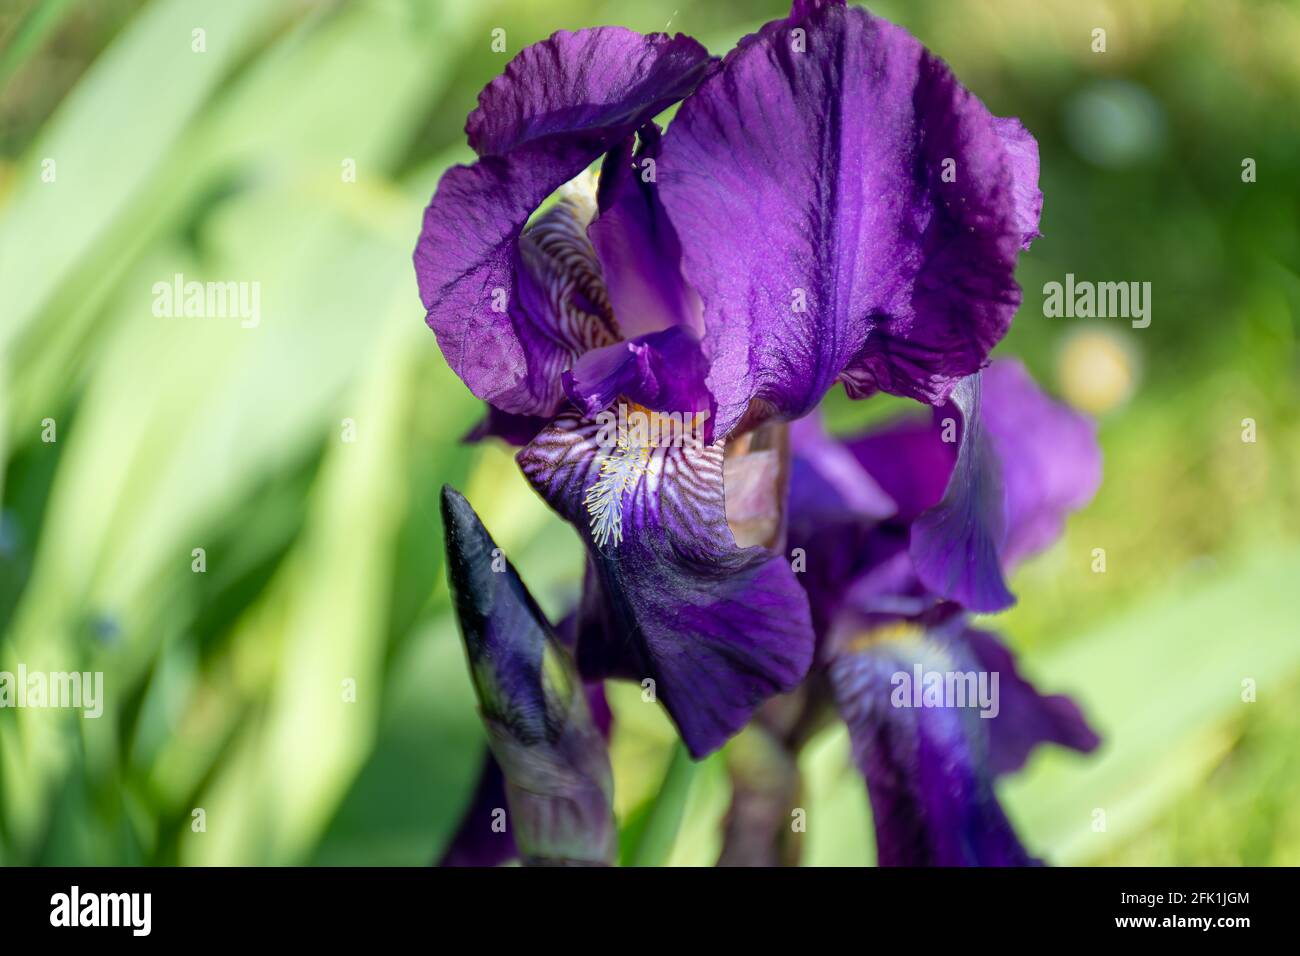 Violette Iris in einem grünen Garten in europa Stockfoto